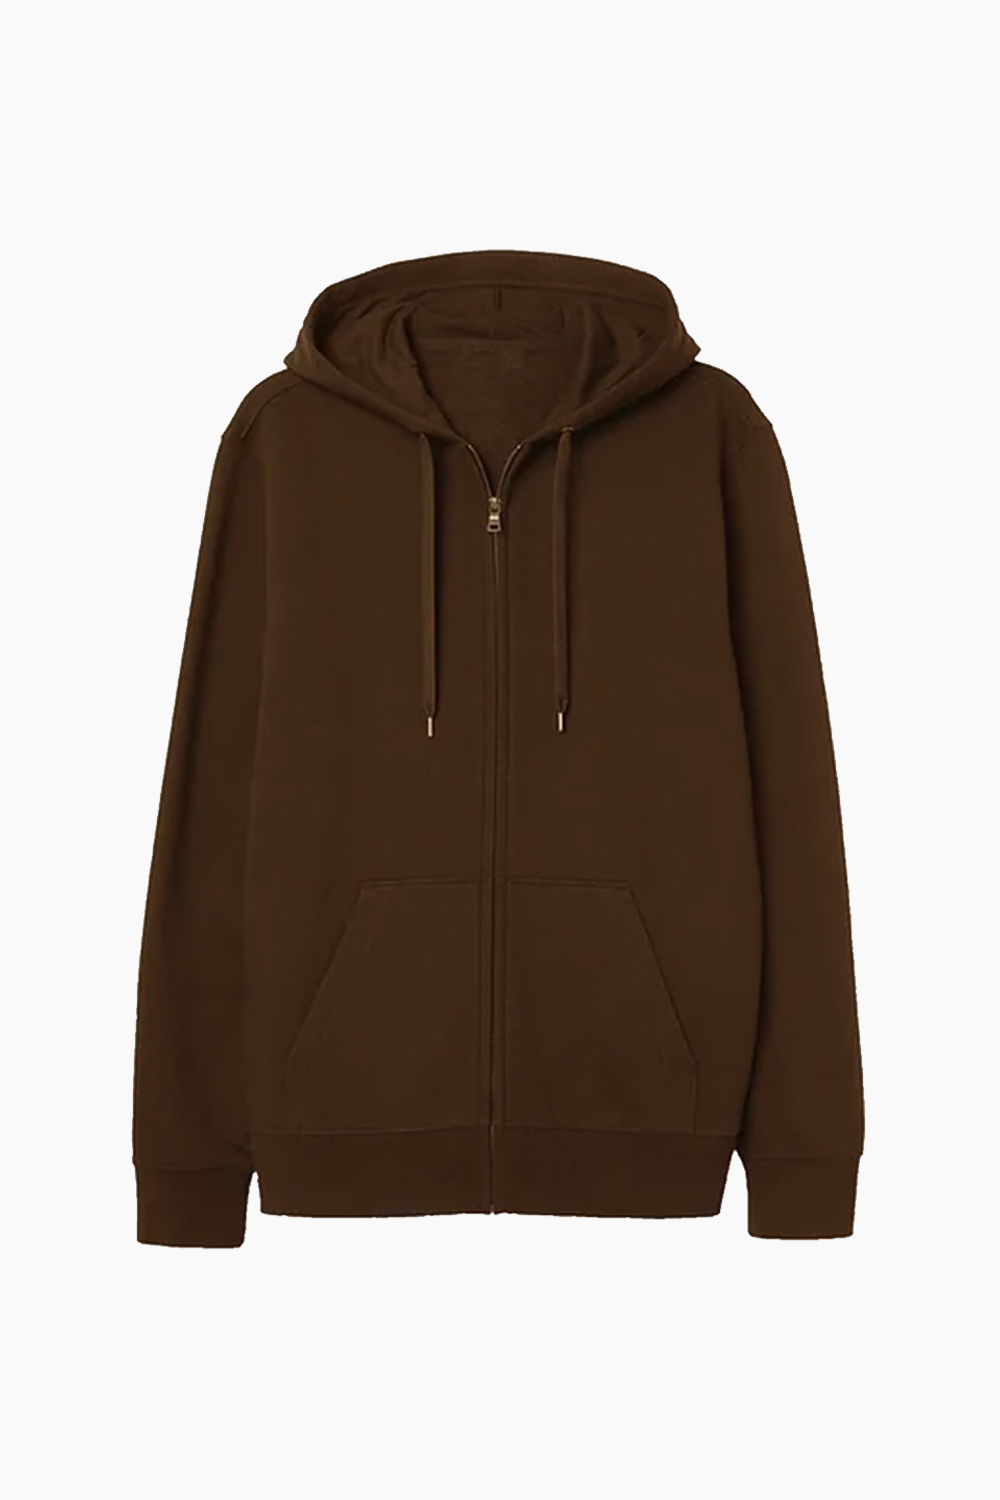 BROWN basic zipped hoodie